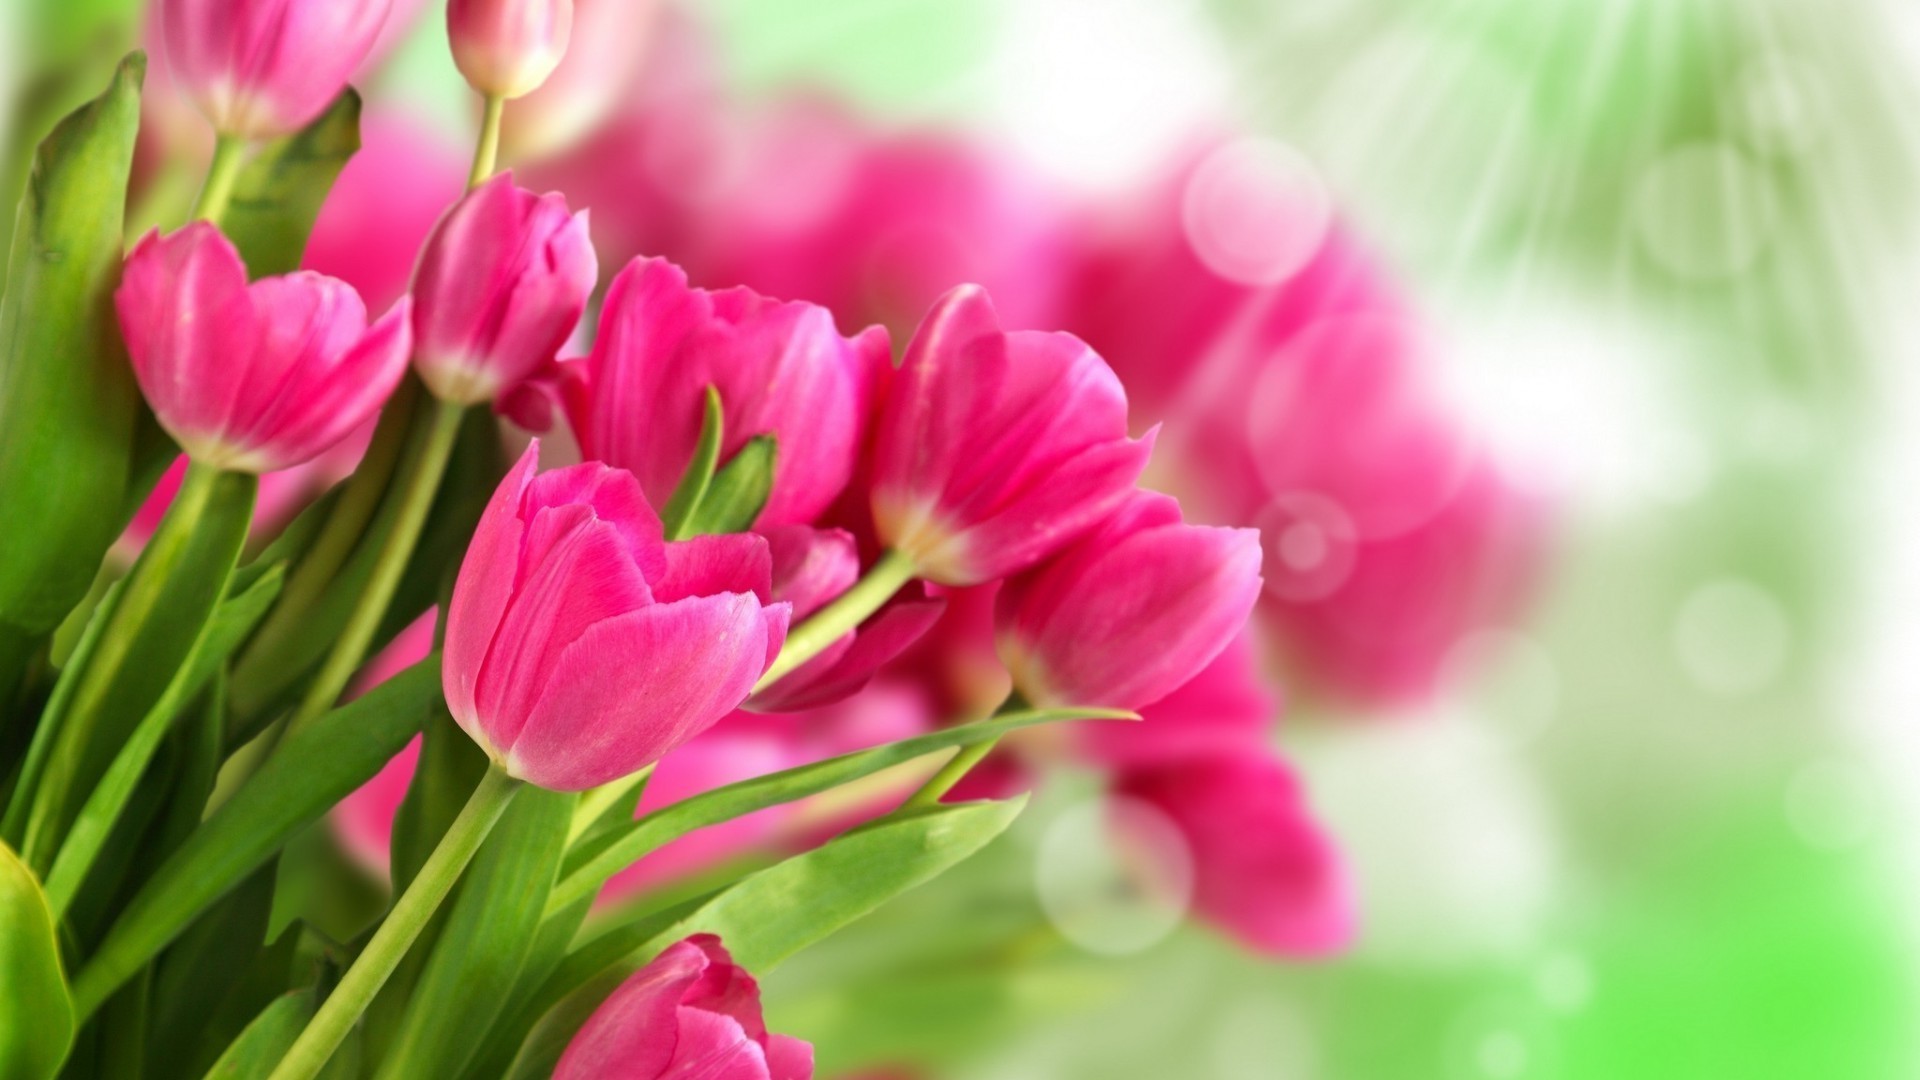 тюльпаны природа флора сад лист лето цветок яркий рост цвет цветочные лепесток блюминг тюльпан крупным планом красивые букет